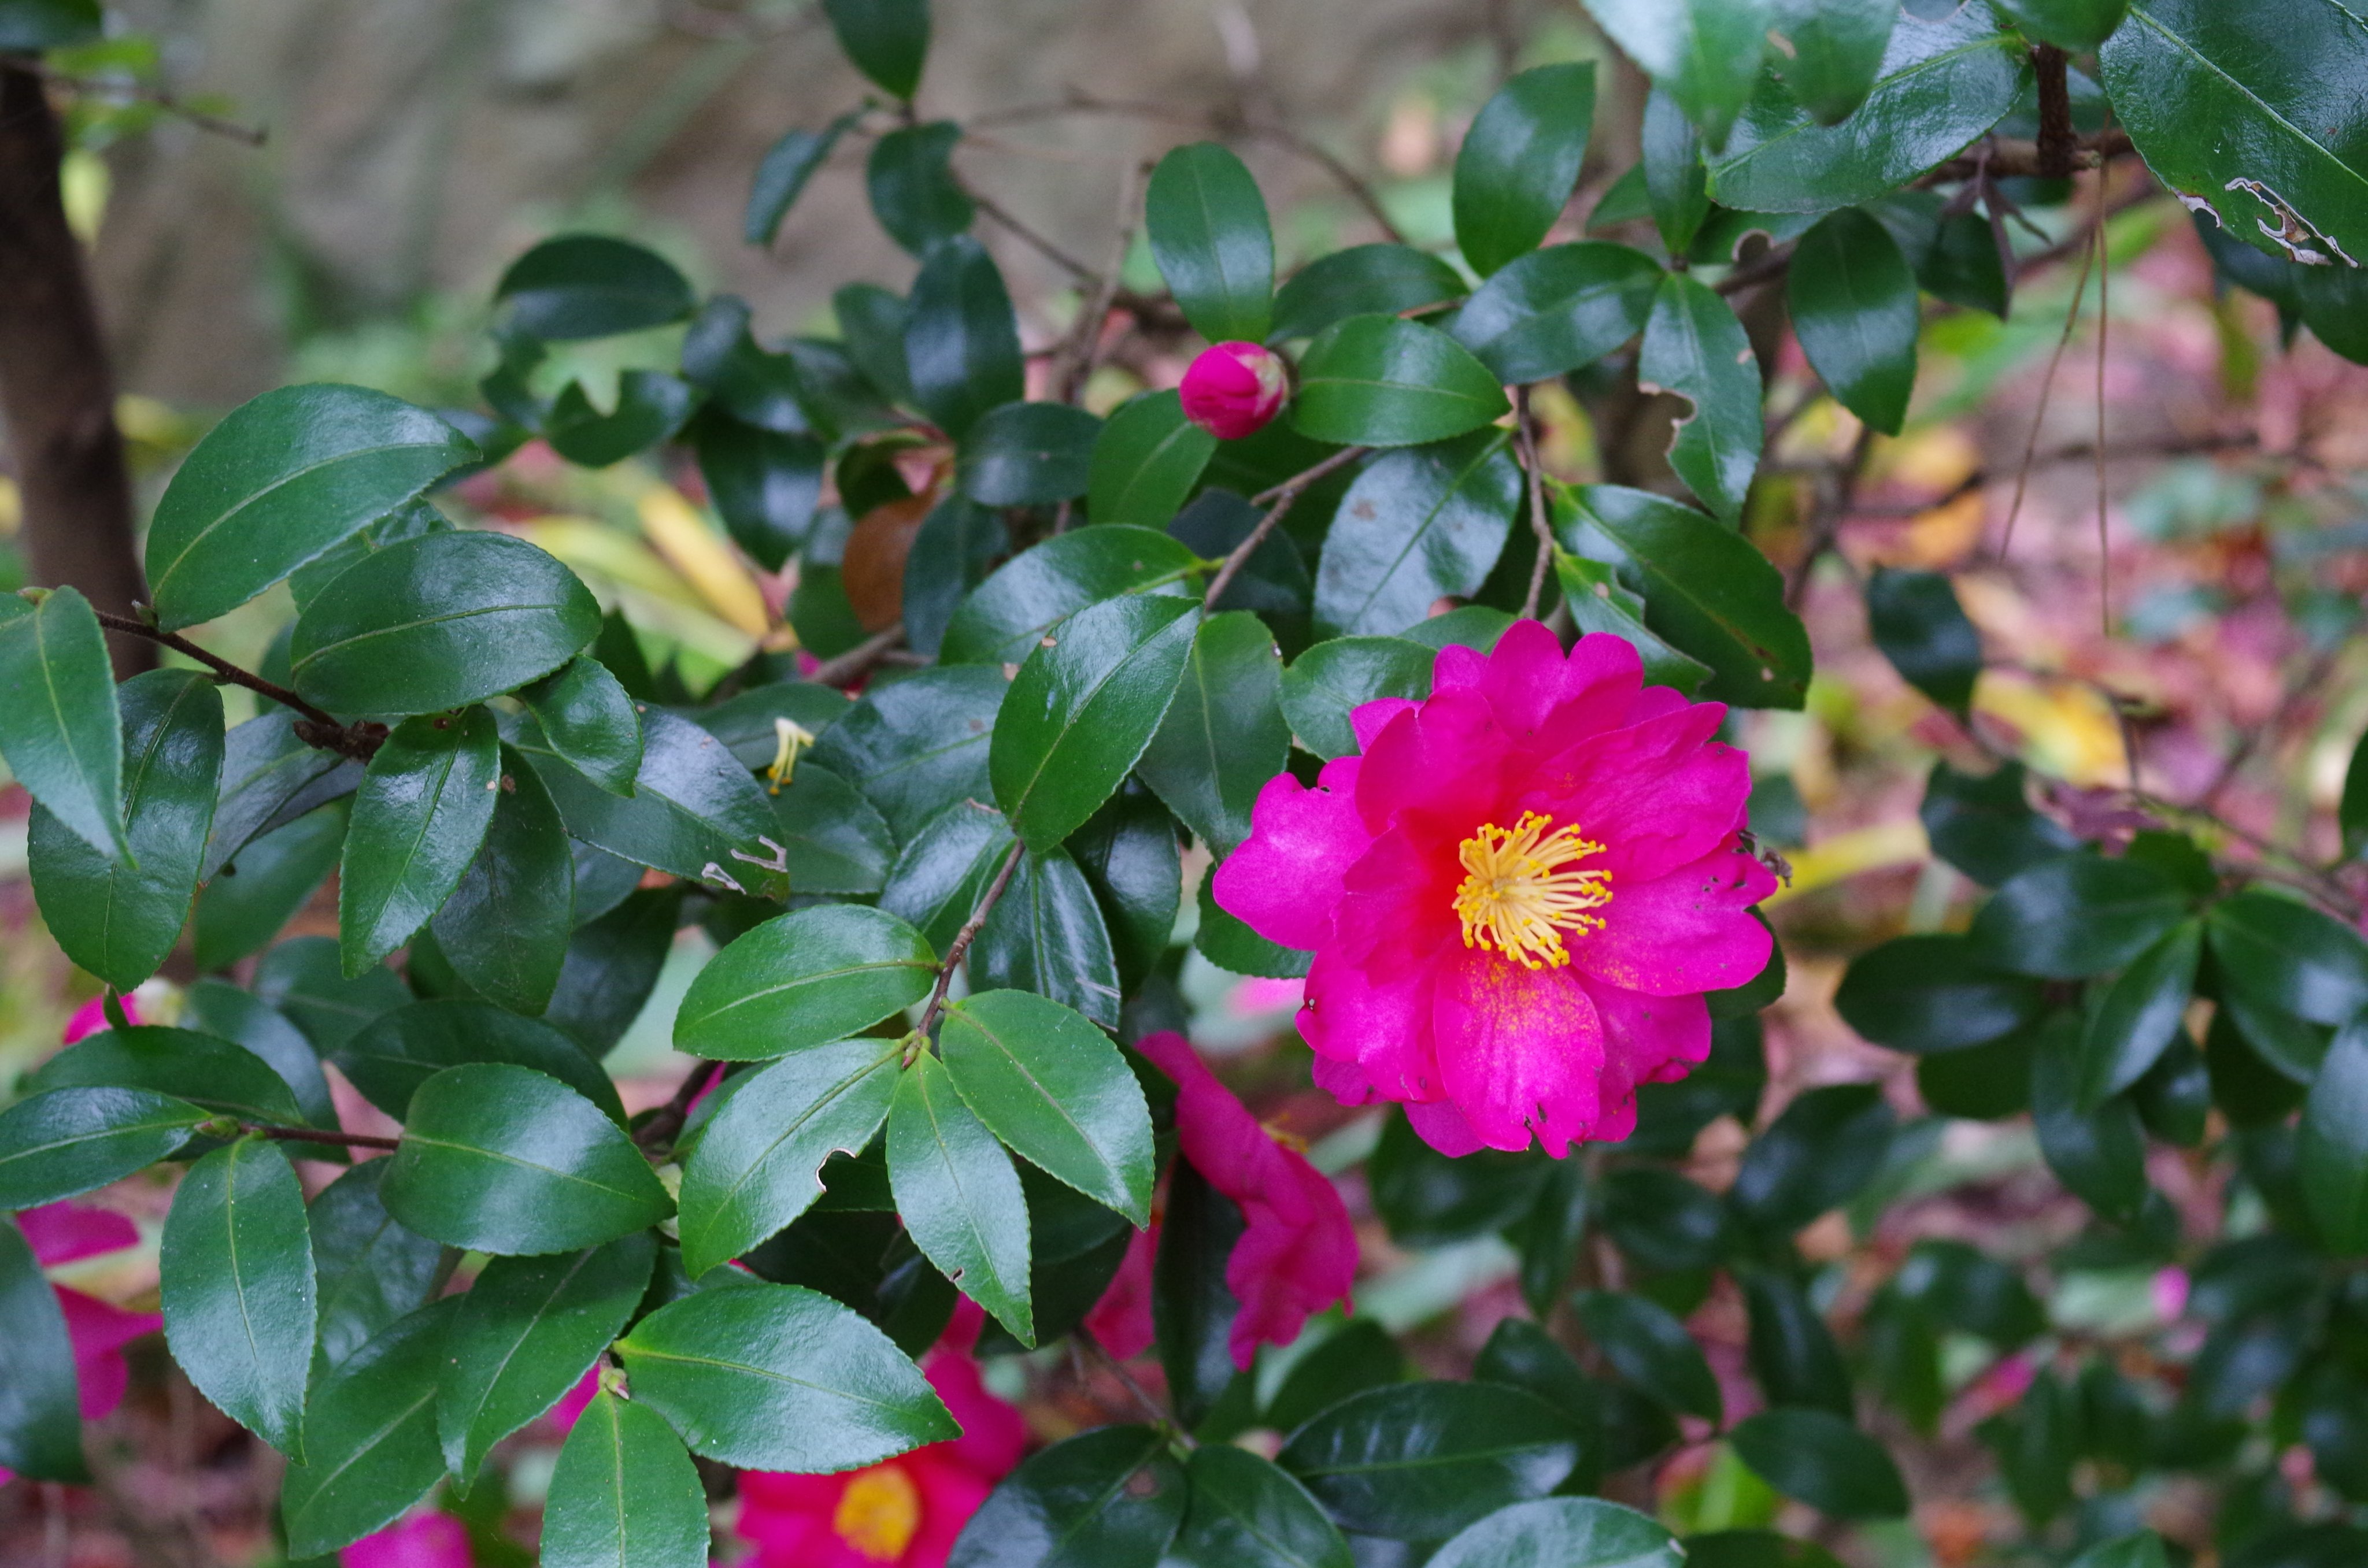 M Makoto 日本語 英語同時ツイート ２年目 サザンカ 山茶花 です ツバキと似ててなかなか区別がつきません 調べたところ 葉っぱにギザギザがあるのがサザンカのようです Camellia And Sasanqua Are So Alike 英語だと特に区別されていない